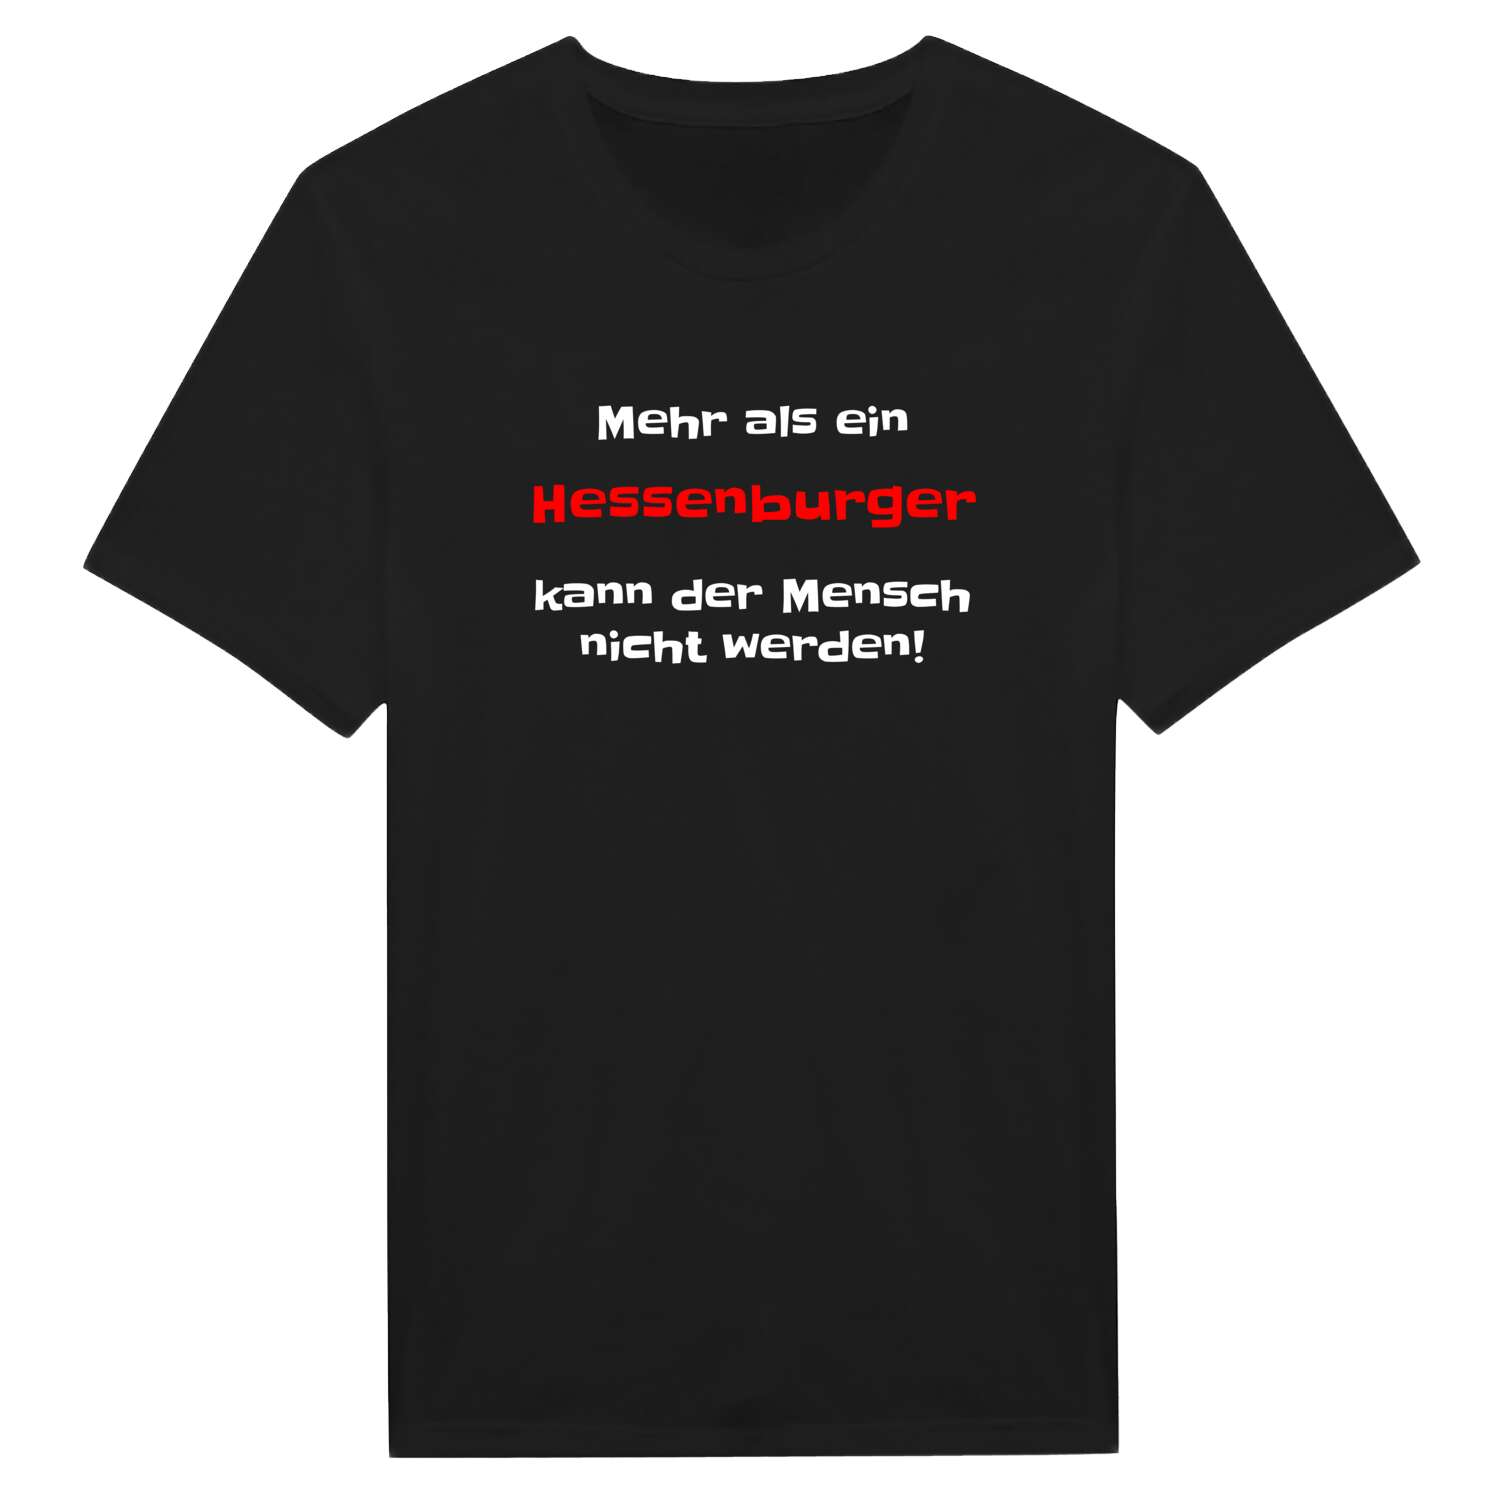 Hessenburg T-Shirt »Mehr als ein«